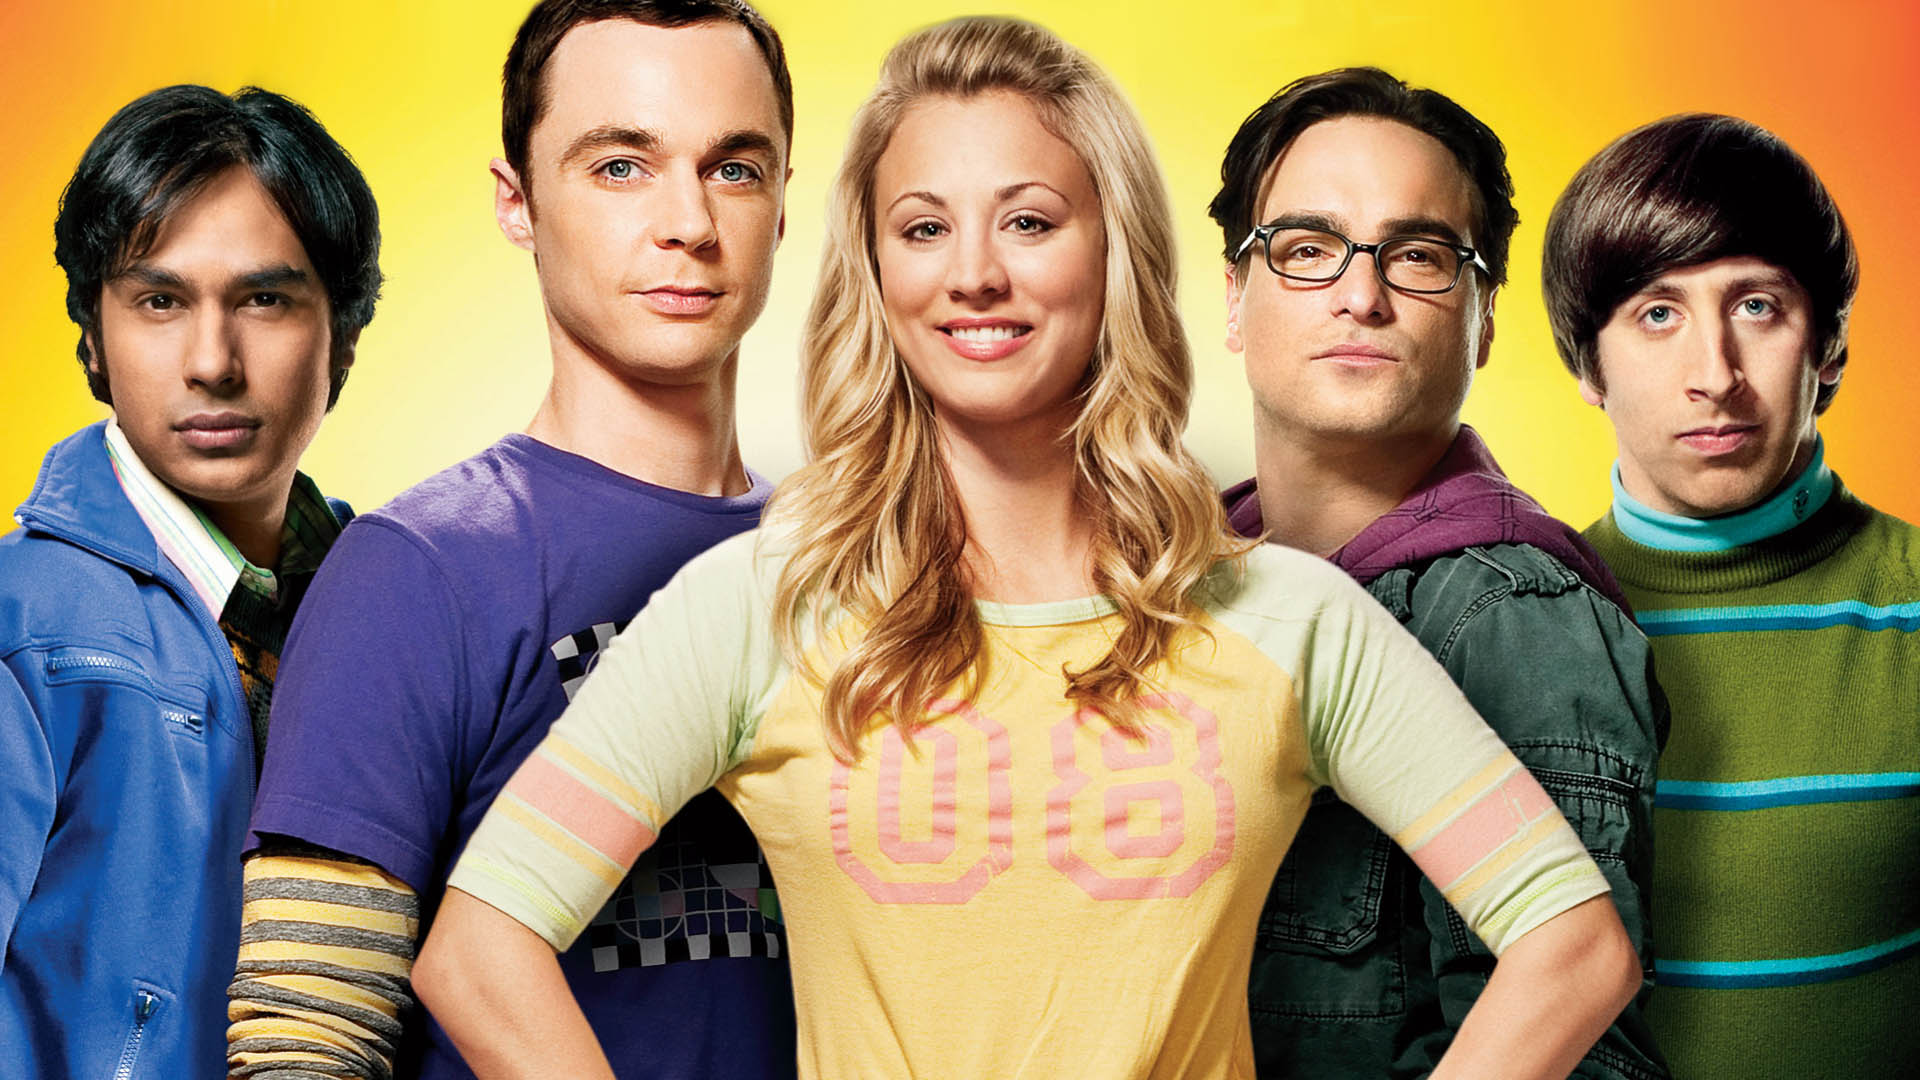 The Big Bang Theory, saison 10 : Un message caché à l'égard de Trump dans l'épisode 13